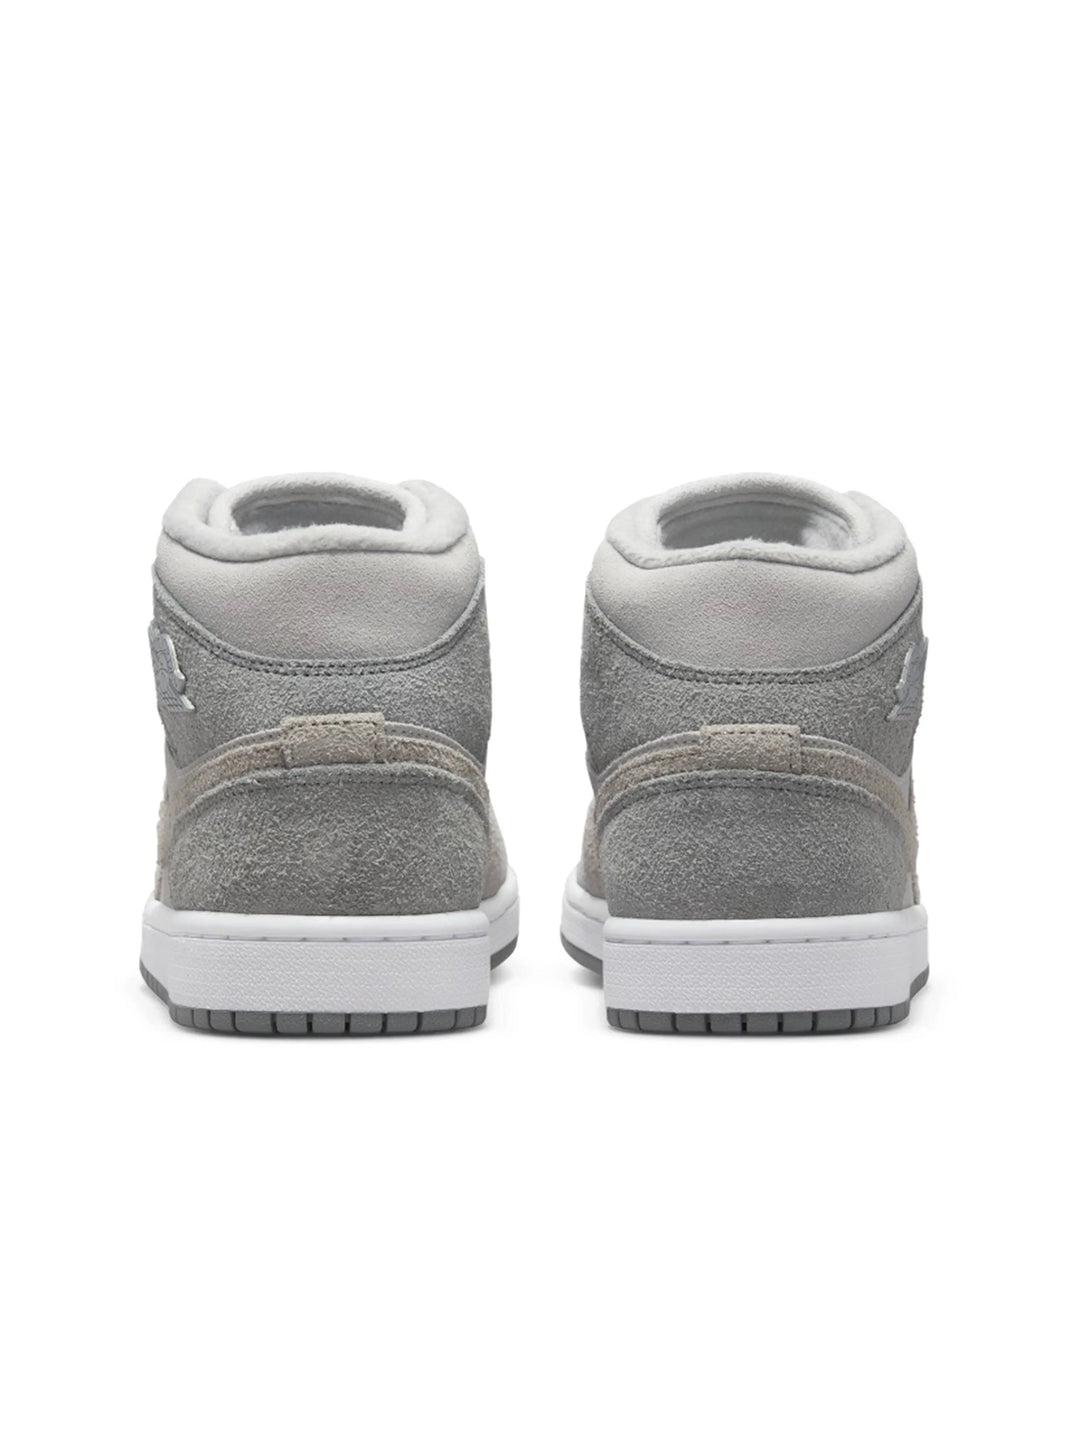 Nike Air Jordan 1 Mid SE Particle Grey [W] Prior